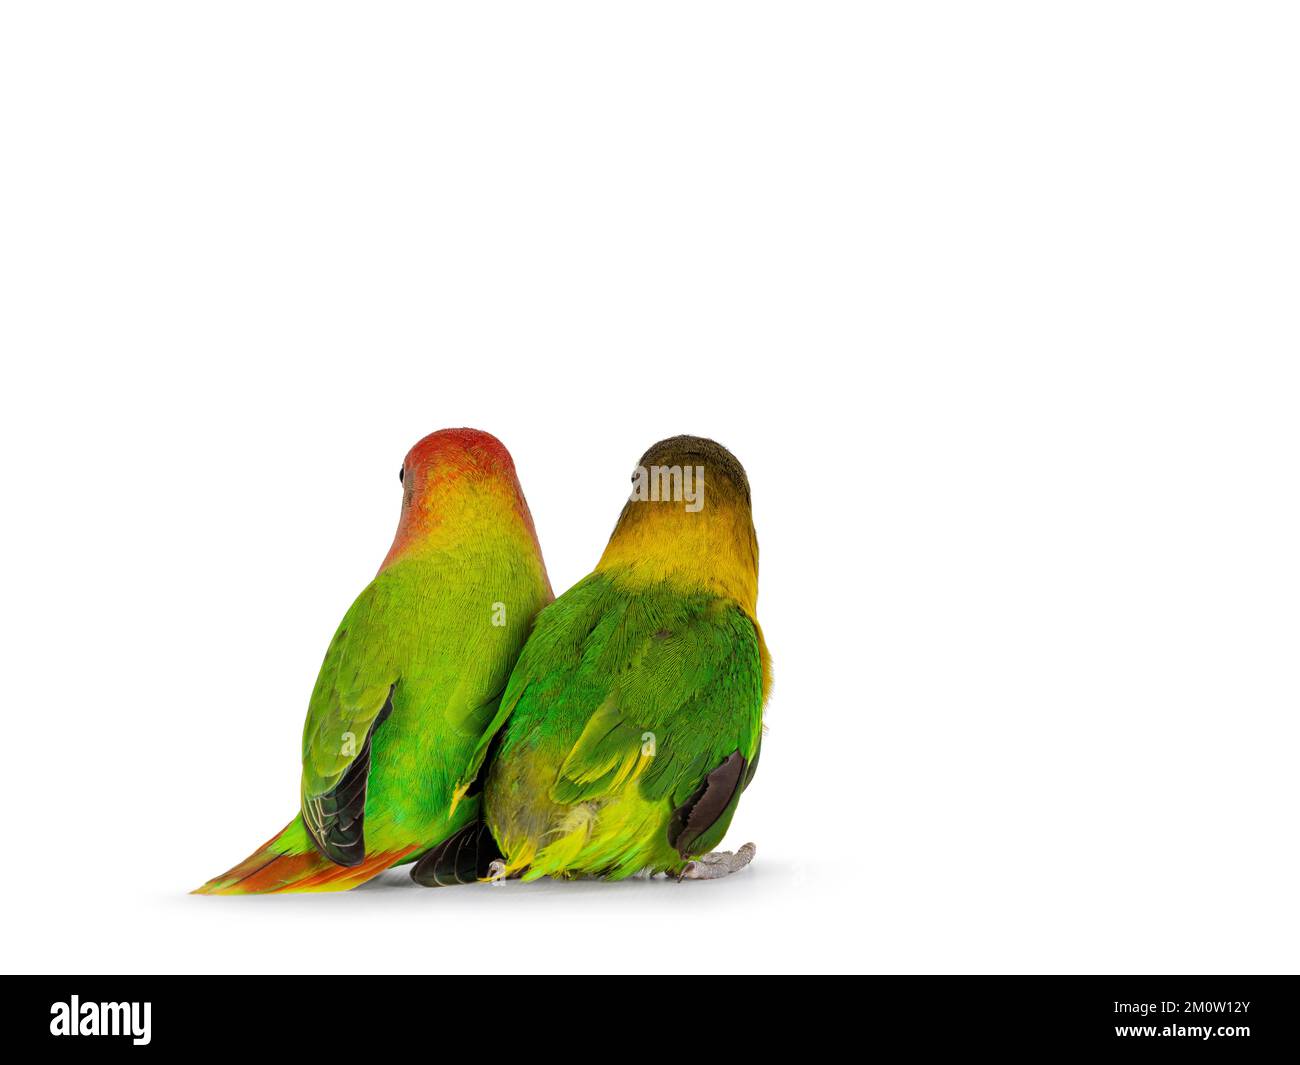 Deux oiseaux lovebird, alias Agapornis, assis ensemble en arrière. Isolé sur un fond blanc. Banque D'Images